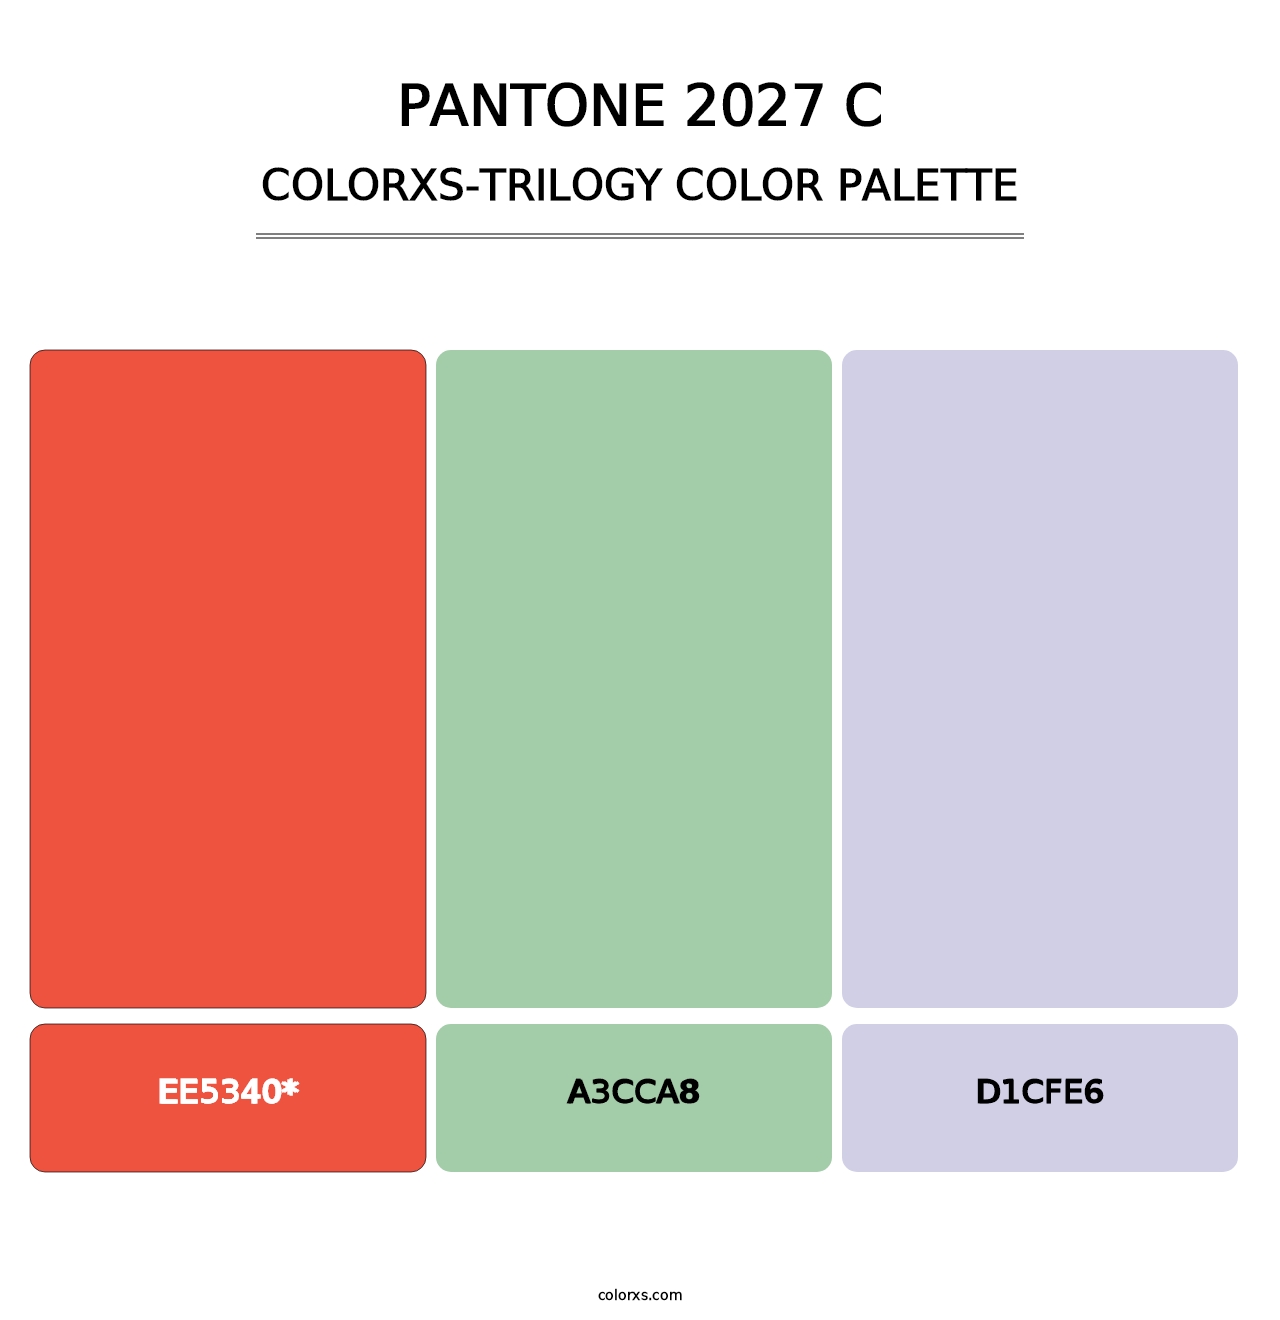 PANTONE 2027 C - Colorxs Trilogy Palette